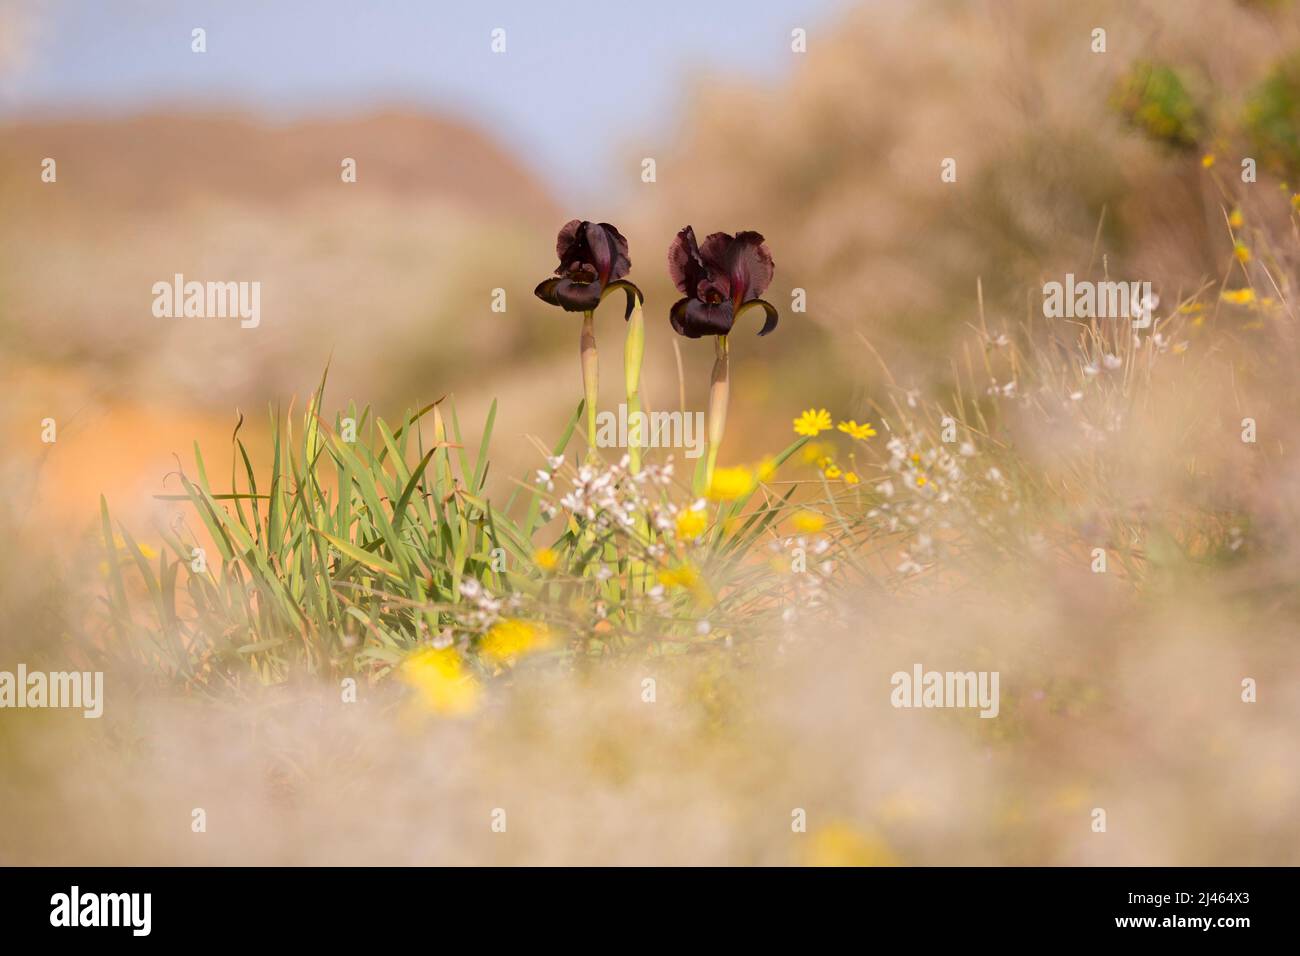 Iris côtières ou violet Iris (Iris atropurpurea) Cet Iris est endémique à Israël Photogrpahed au littoral de la réserve naturelle de l'Iris, Natanya, en Israël Banque D'Images